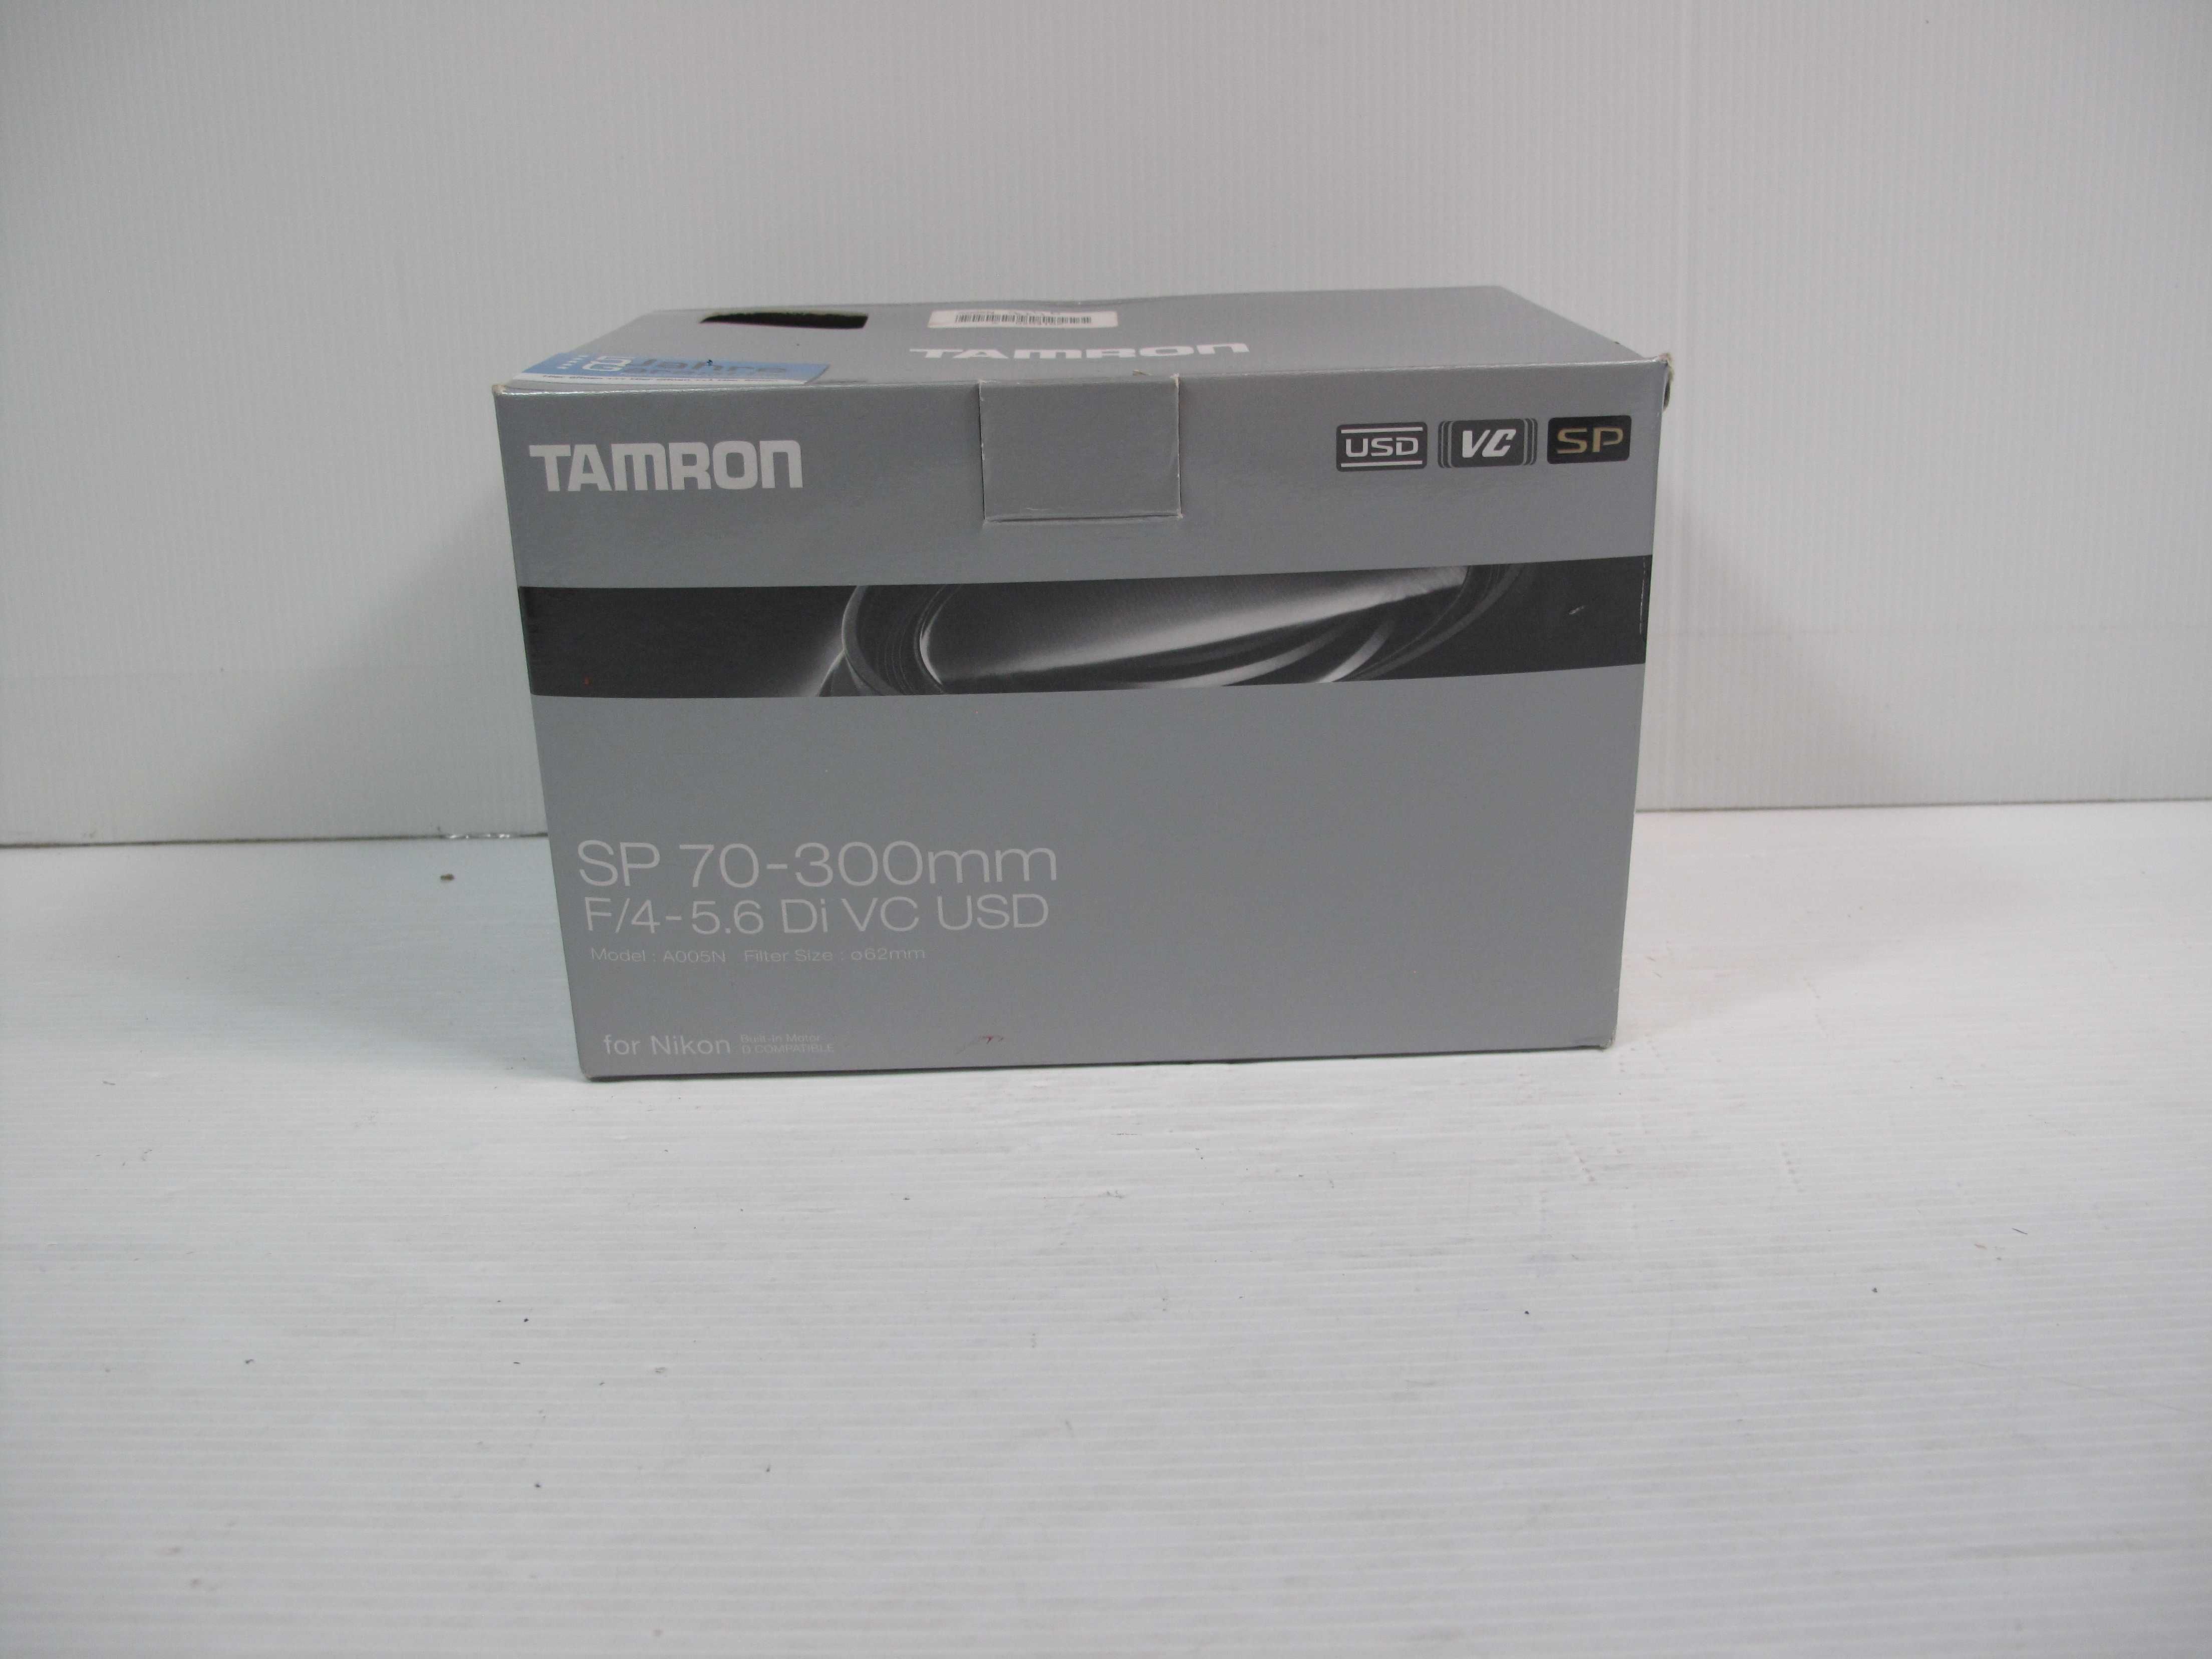 Tamron / Nikon 70-300 VC (Estabilizador) tudo na caixa original